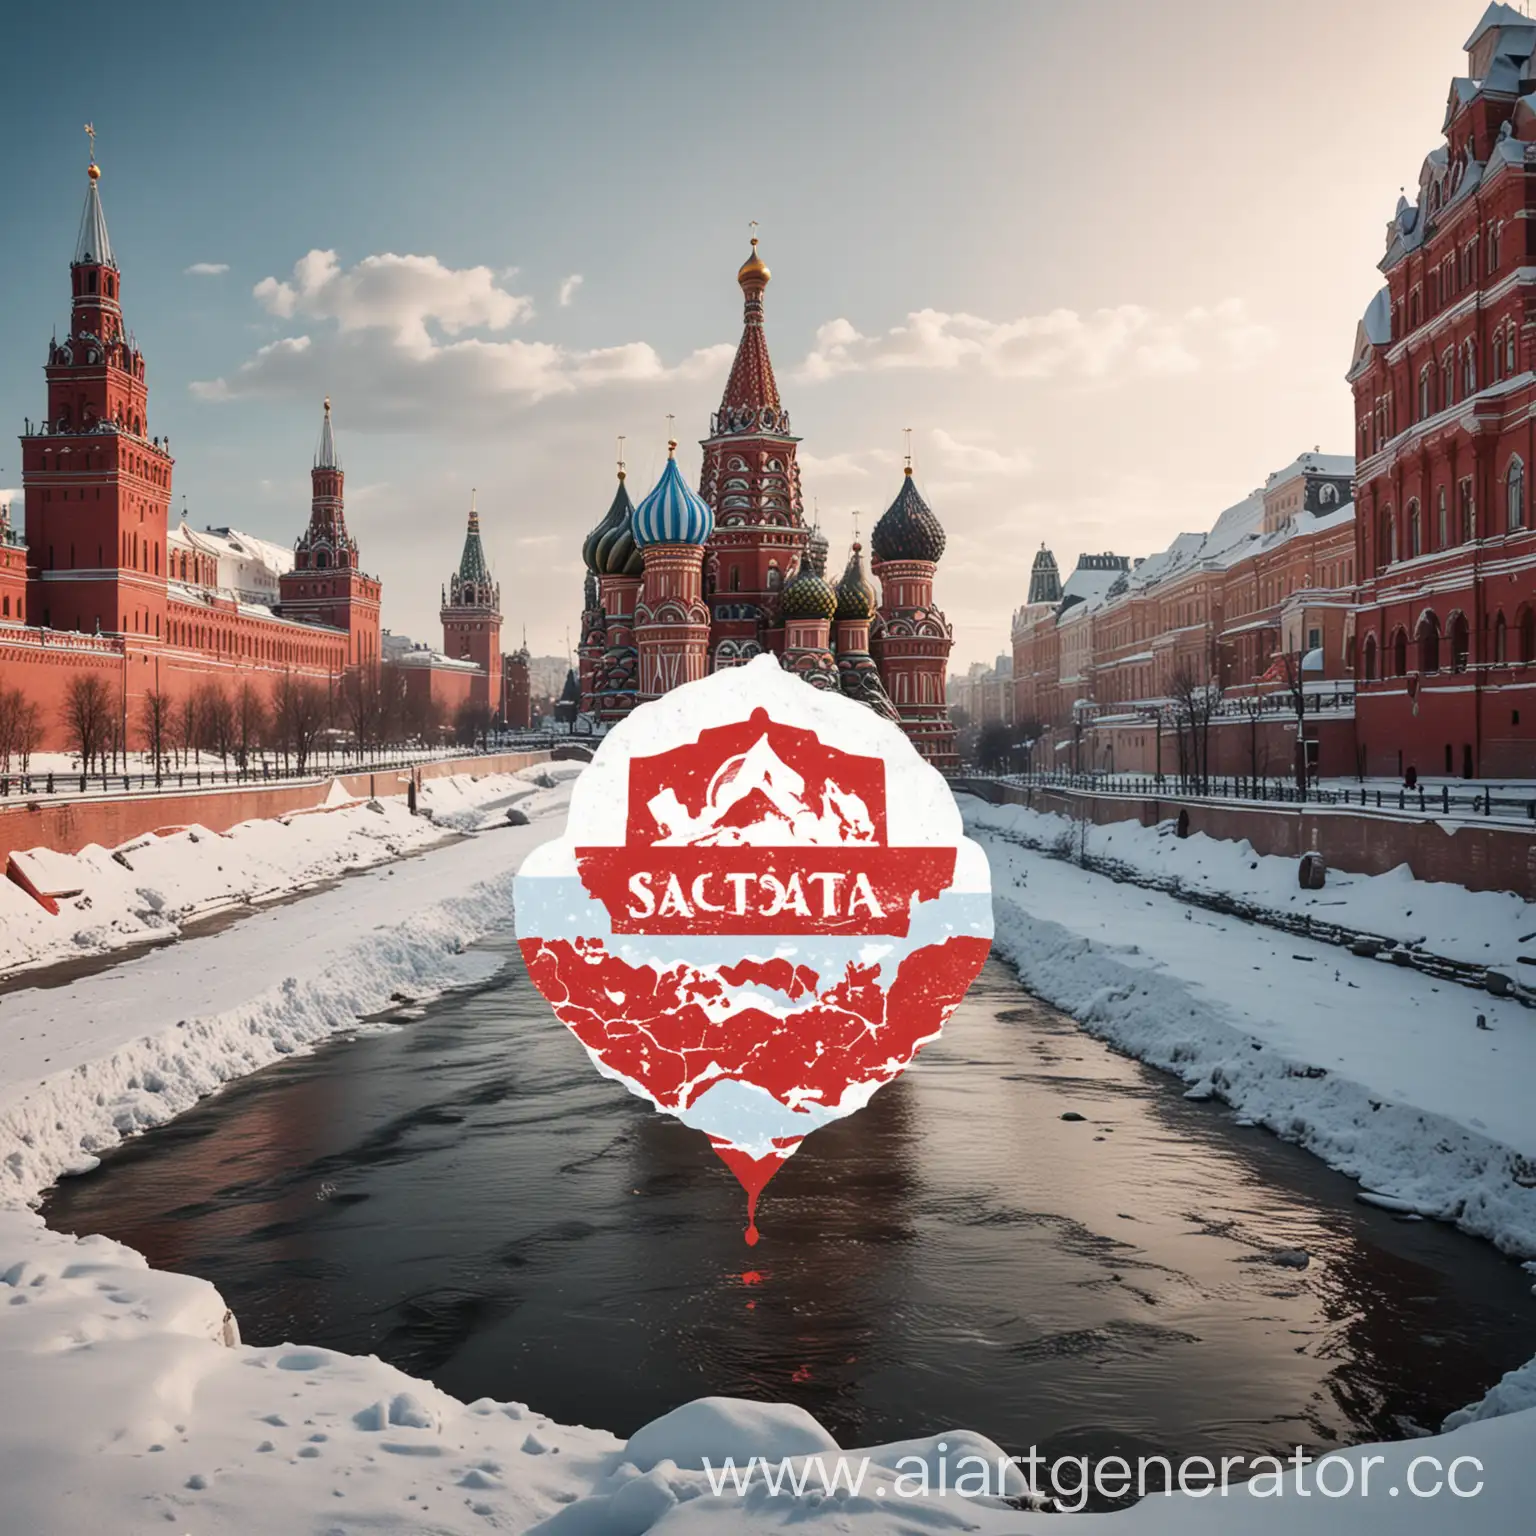 Создай логотип для телеграмм канала по интересным местам России. На фоне красная площадь в снегу с речкой